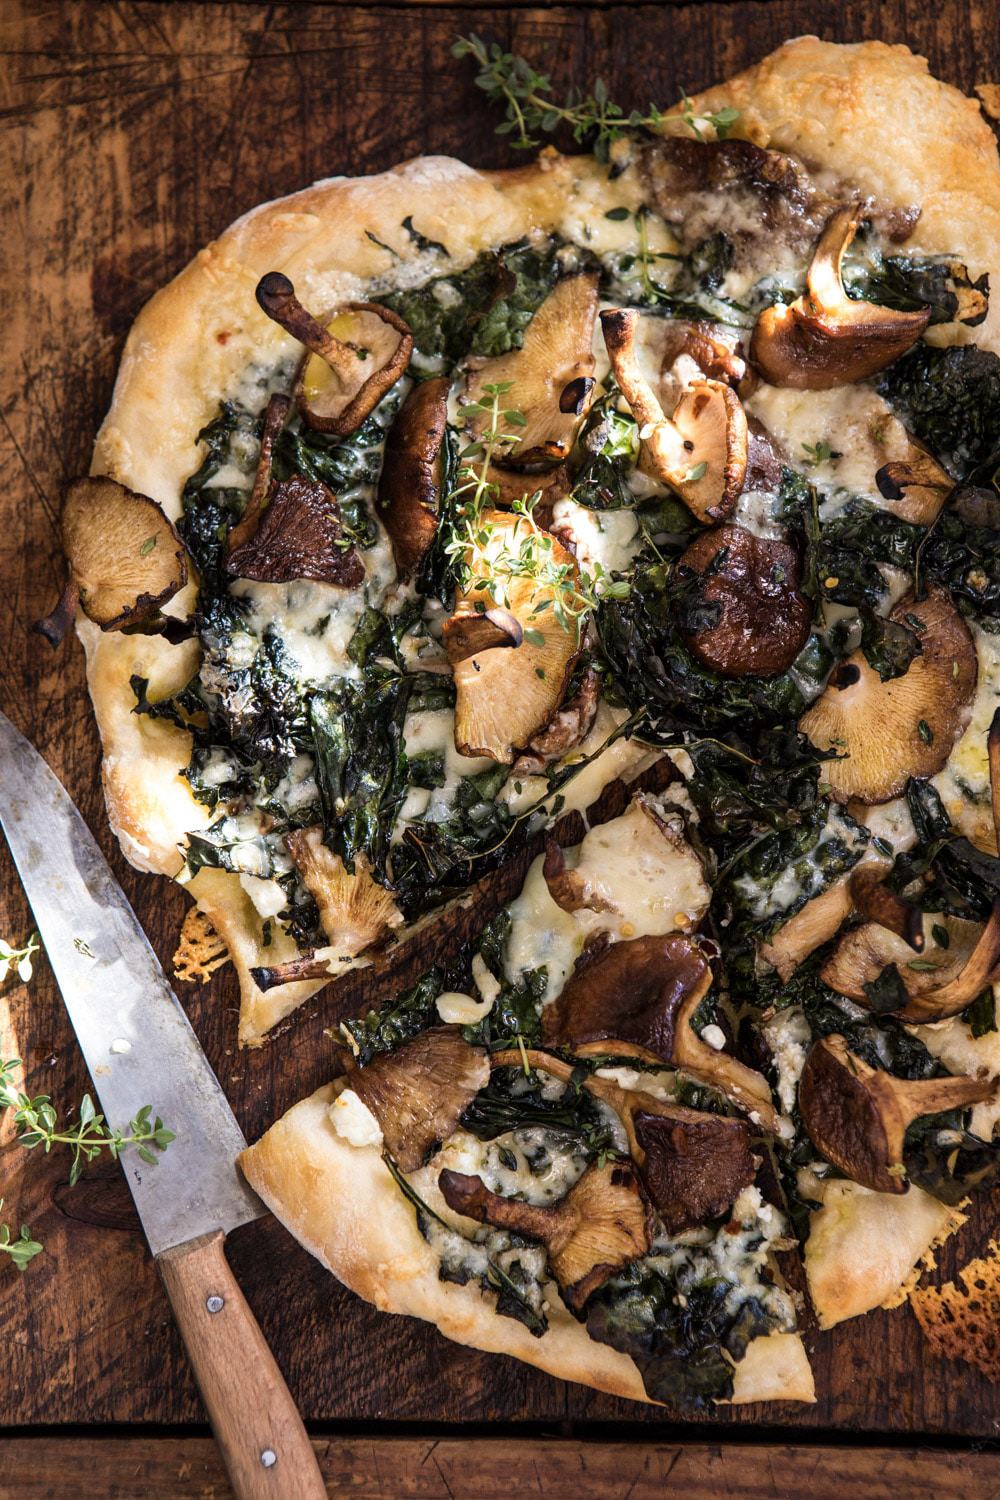 Roasted Mushroom Kale Pizza | halfbakedharvest.com #pizzs #mushrooms #winter #fall #autumn #kale #Italian